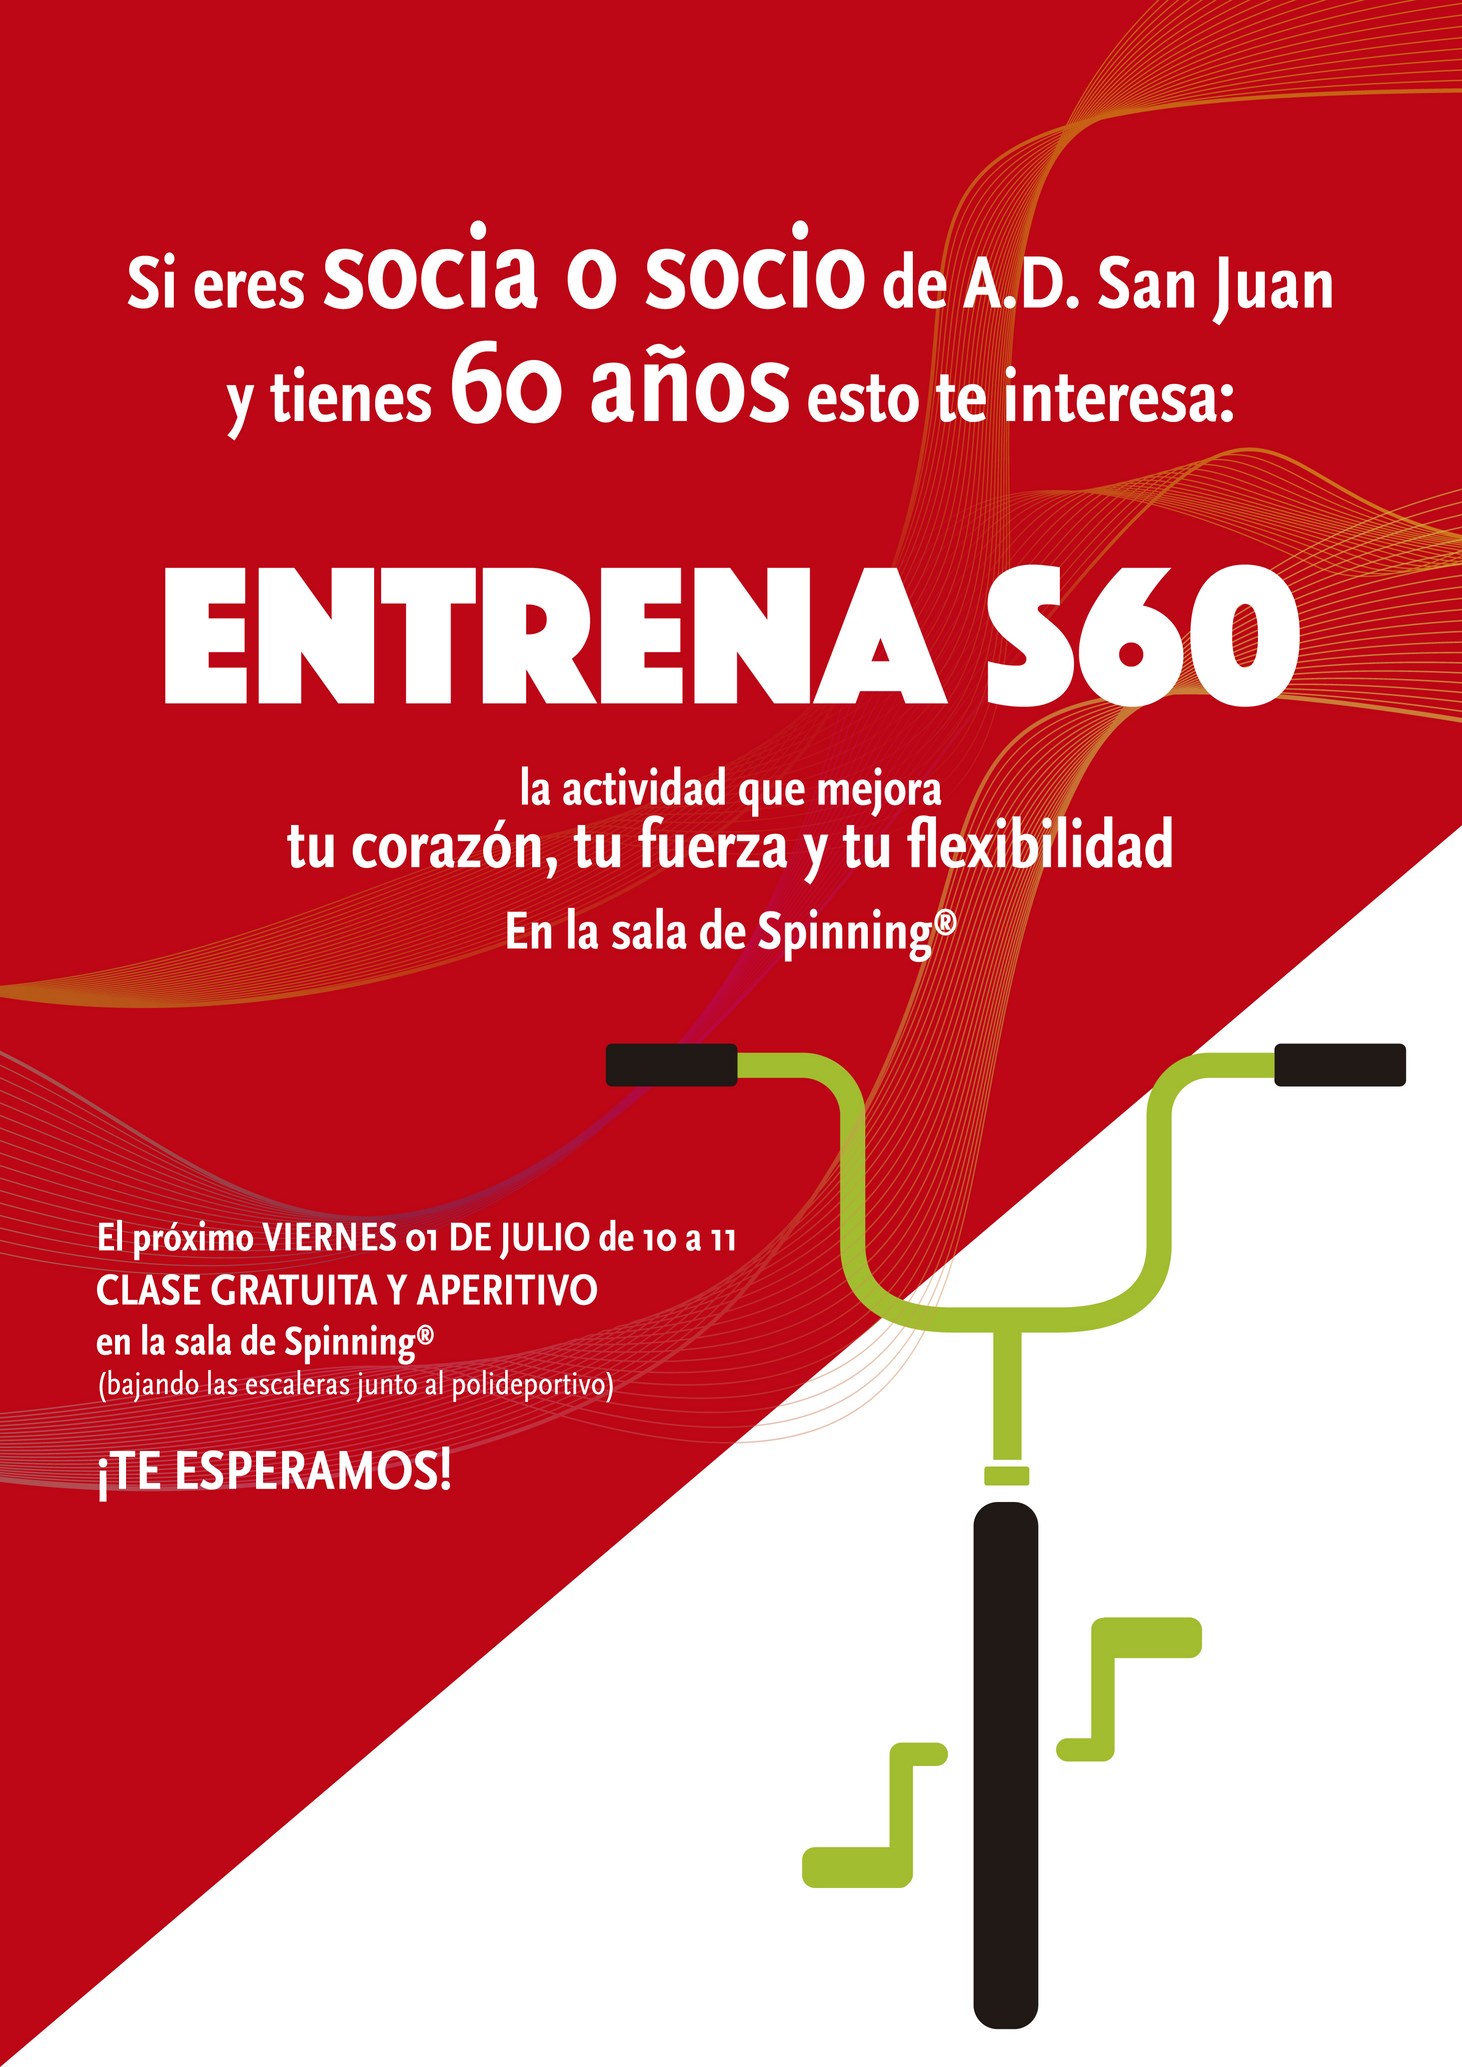 Entrena S60 2016 (Copy)